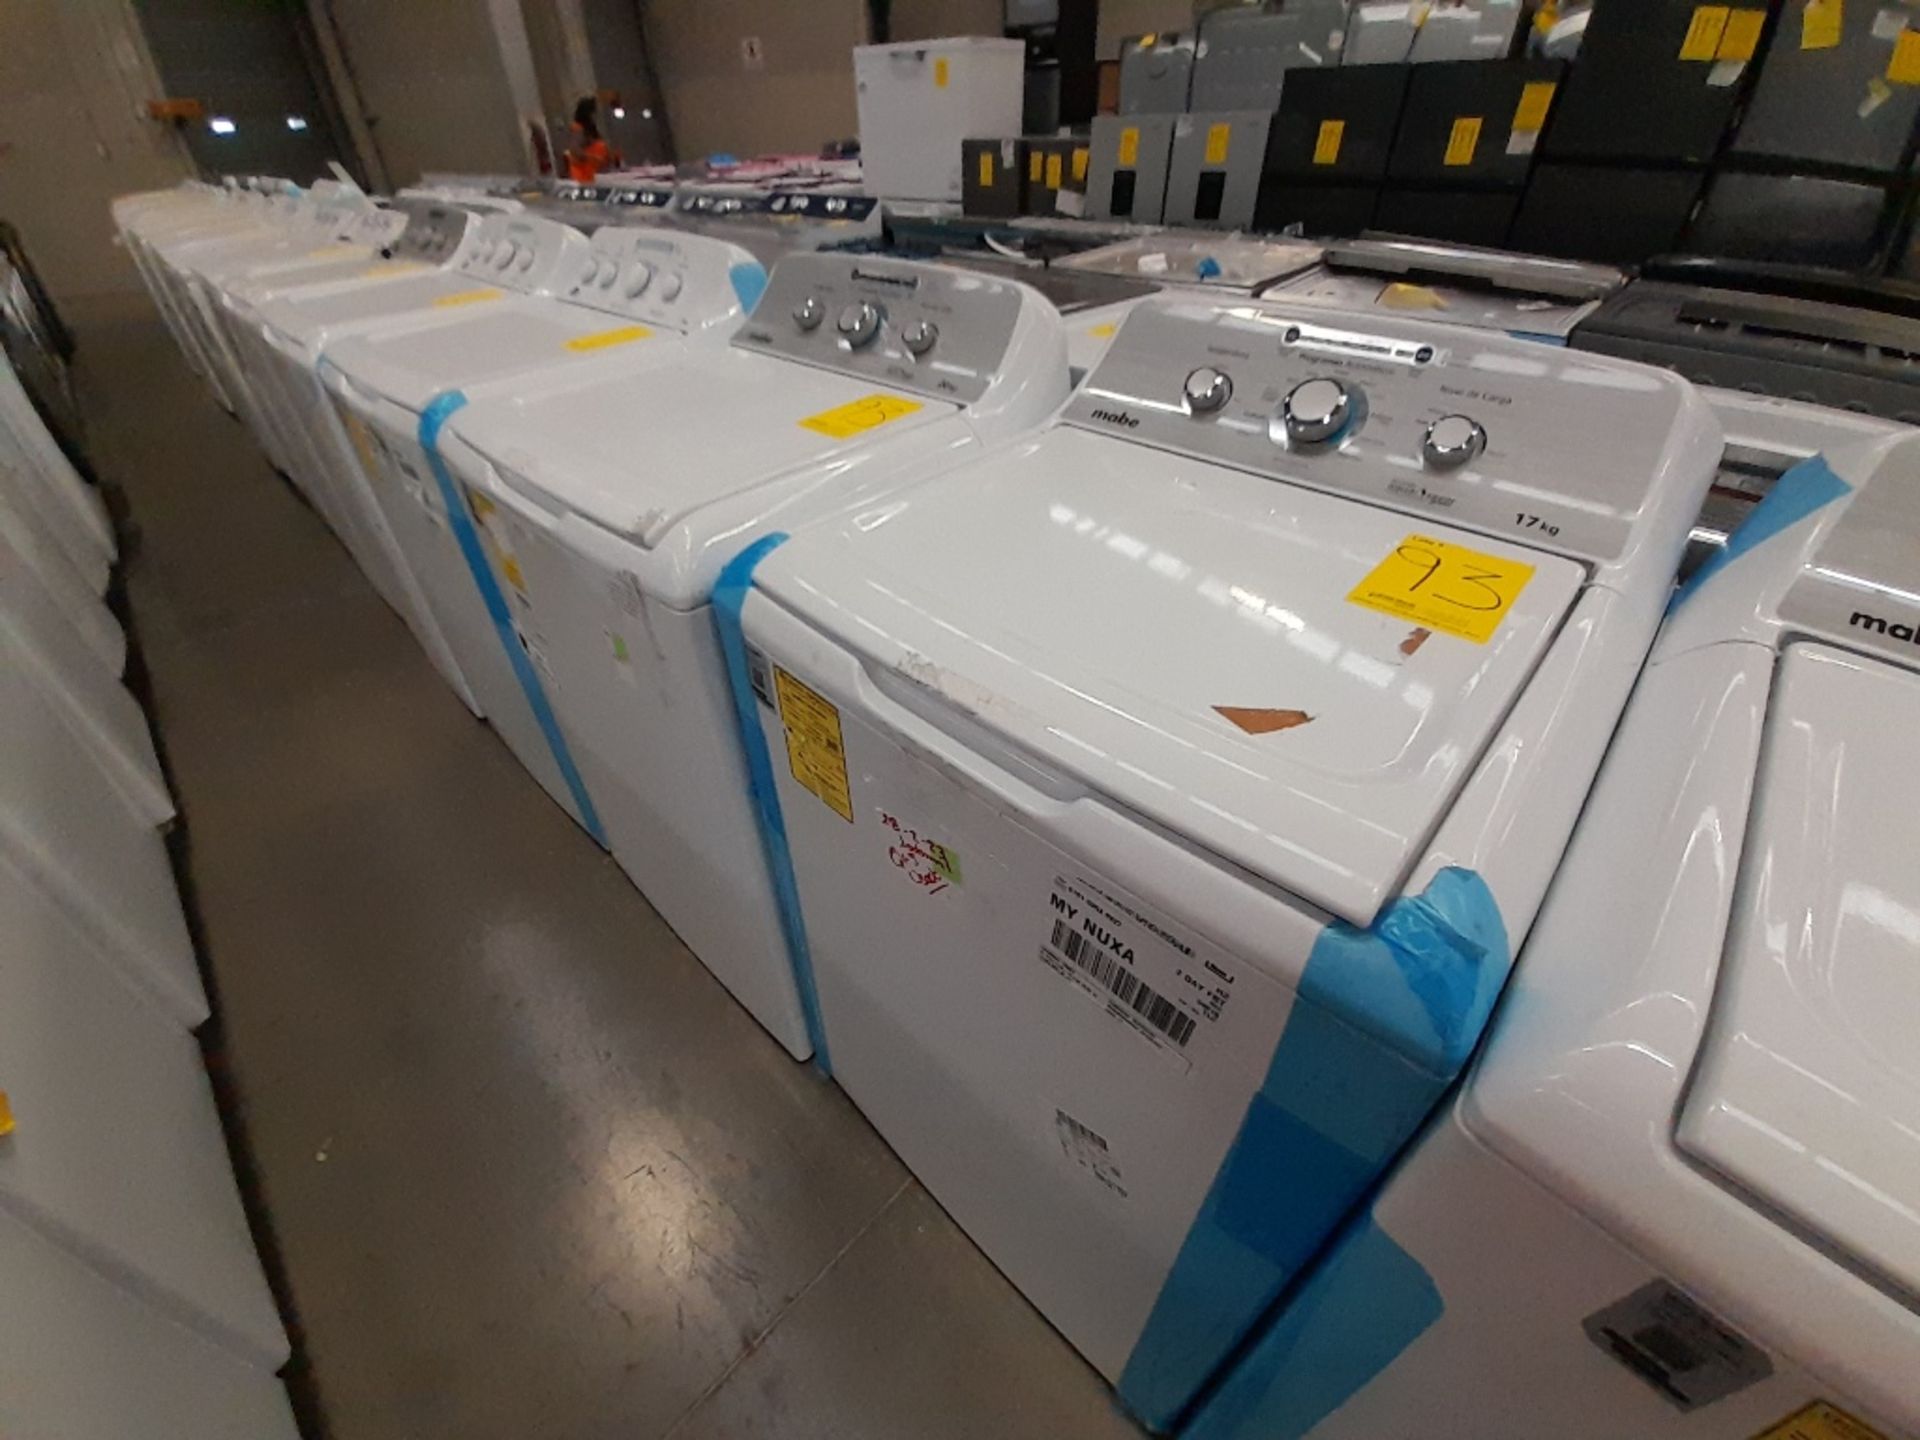 Lote de 2 lavadoras Contiene: 1 lavadora de 20 KG Marca MABE, Modelo LMA70213CBAB03, Serie S19193, - Image 3 of 6